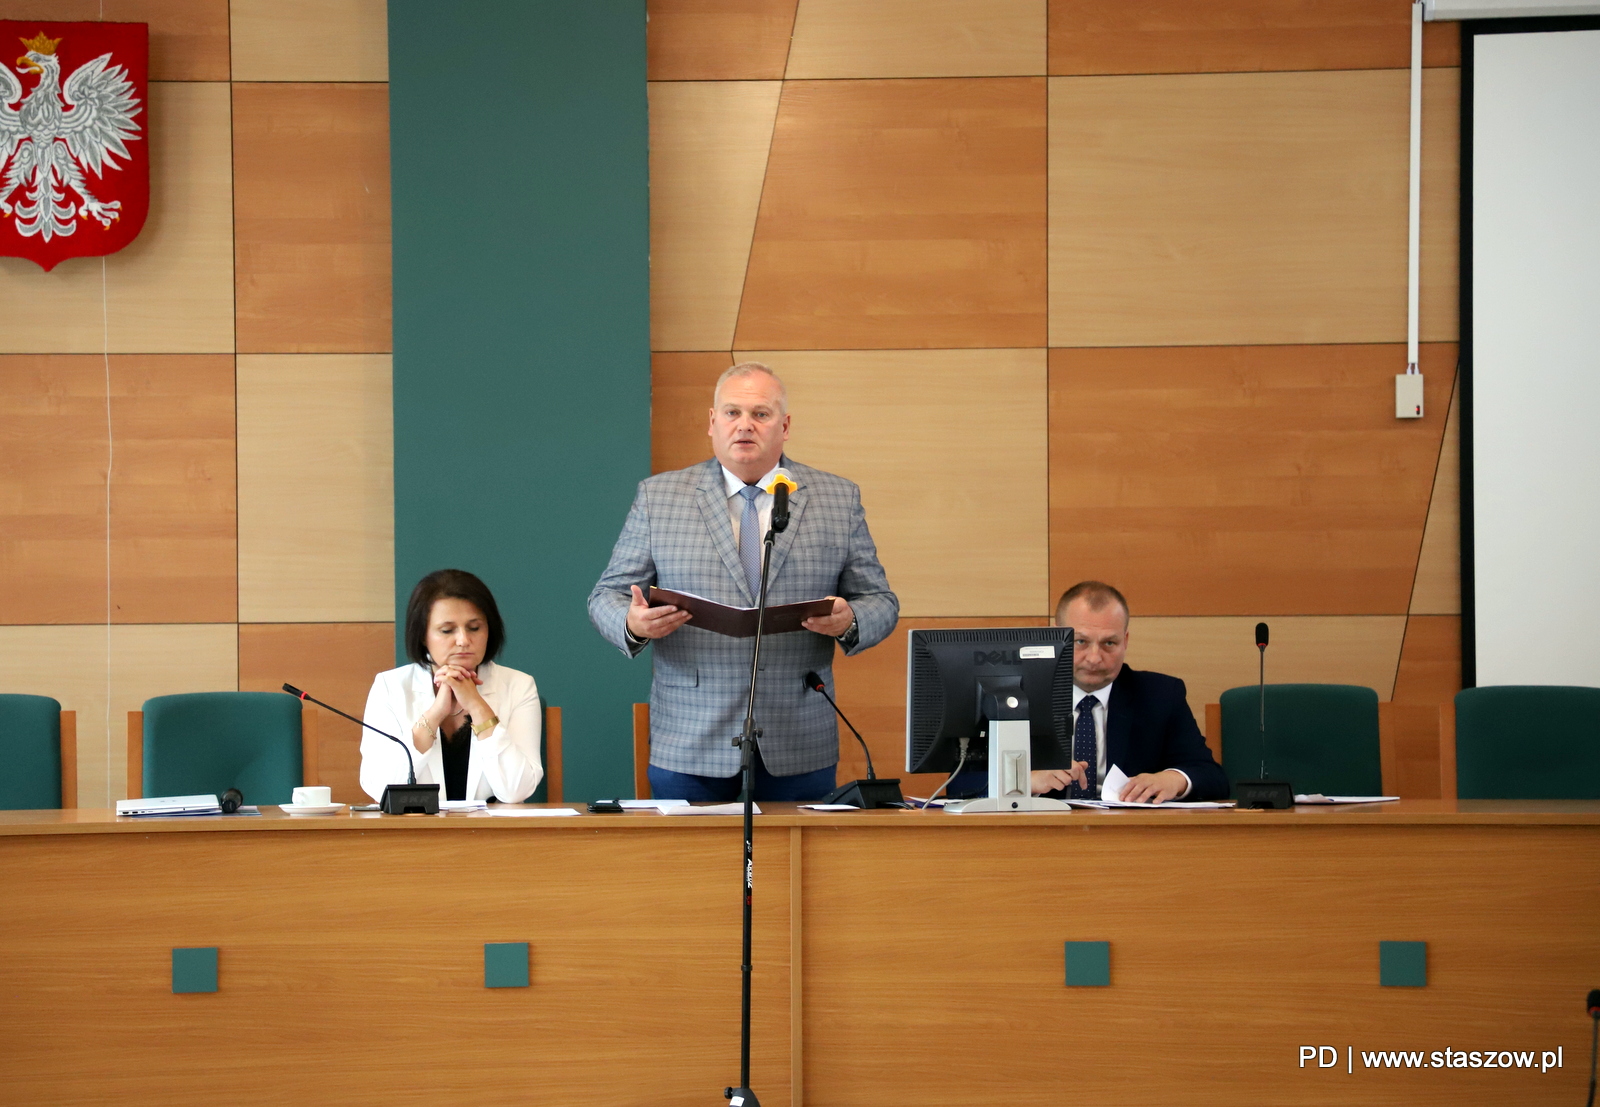 LXXII Sesja Rady Miejskiej w Staszowie 